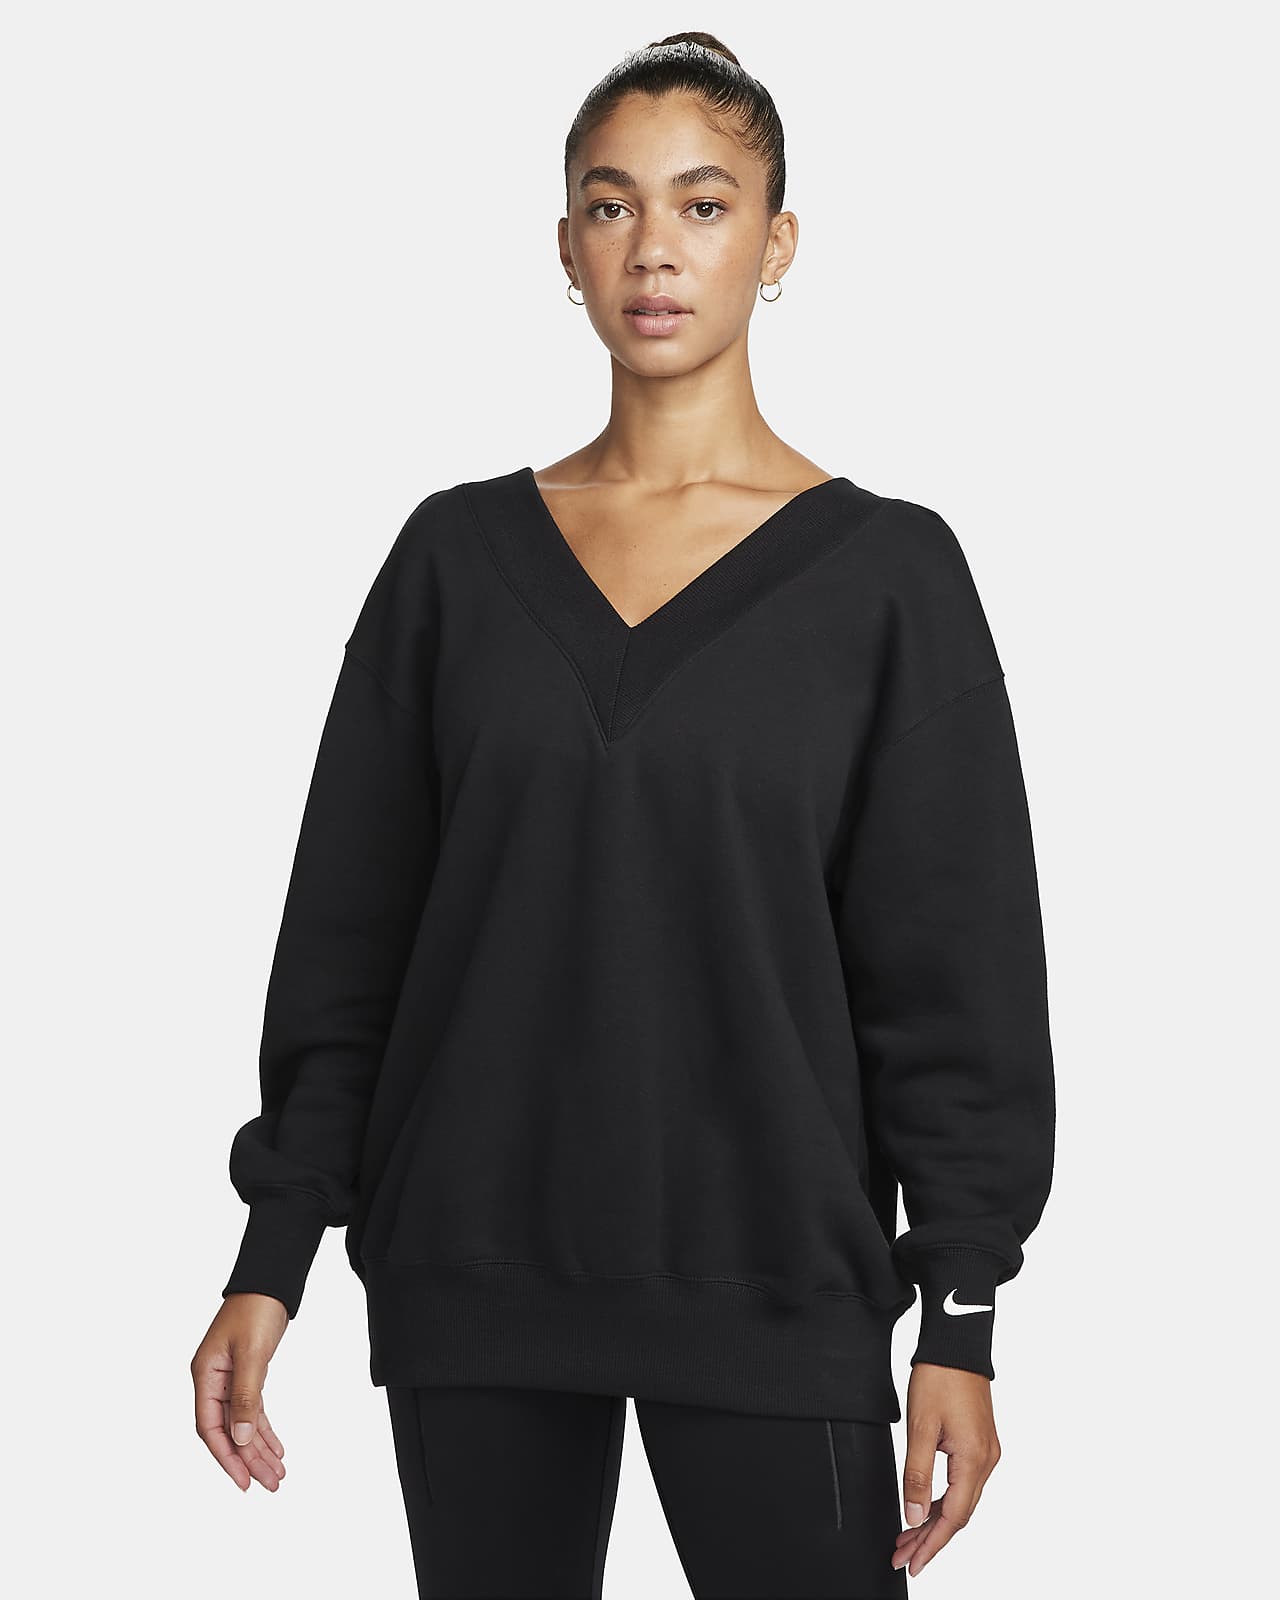 Nike Sportswear Phoenix Fleece Women's Oversized V-Neck Sweatshirt.